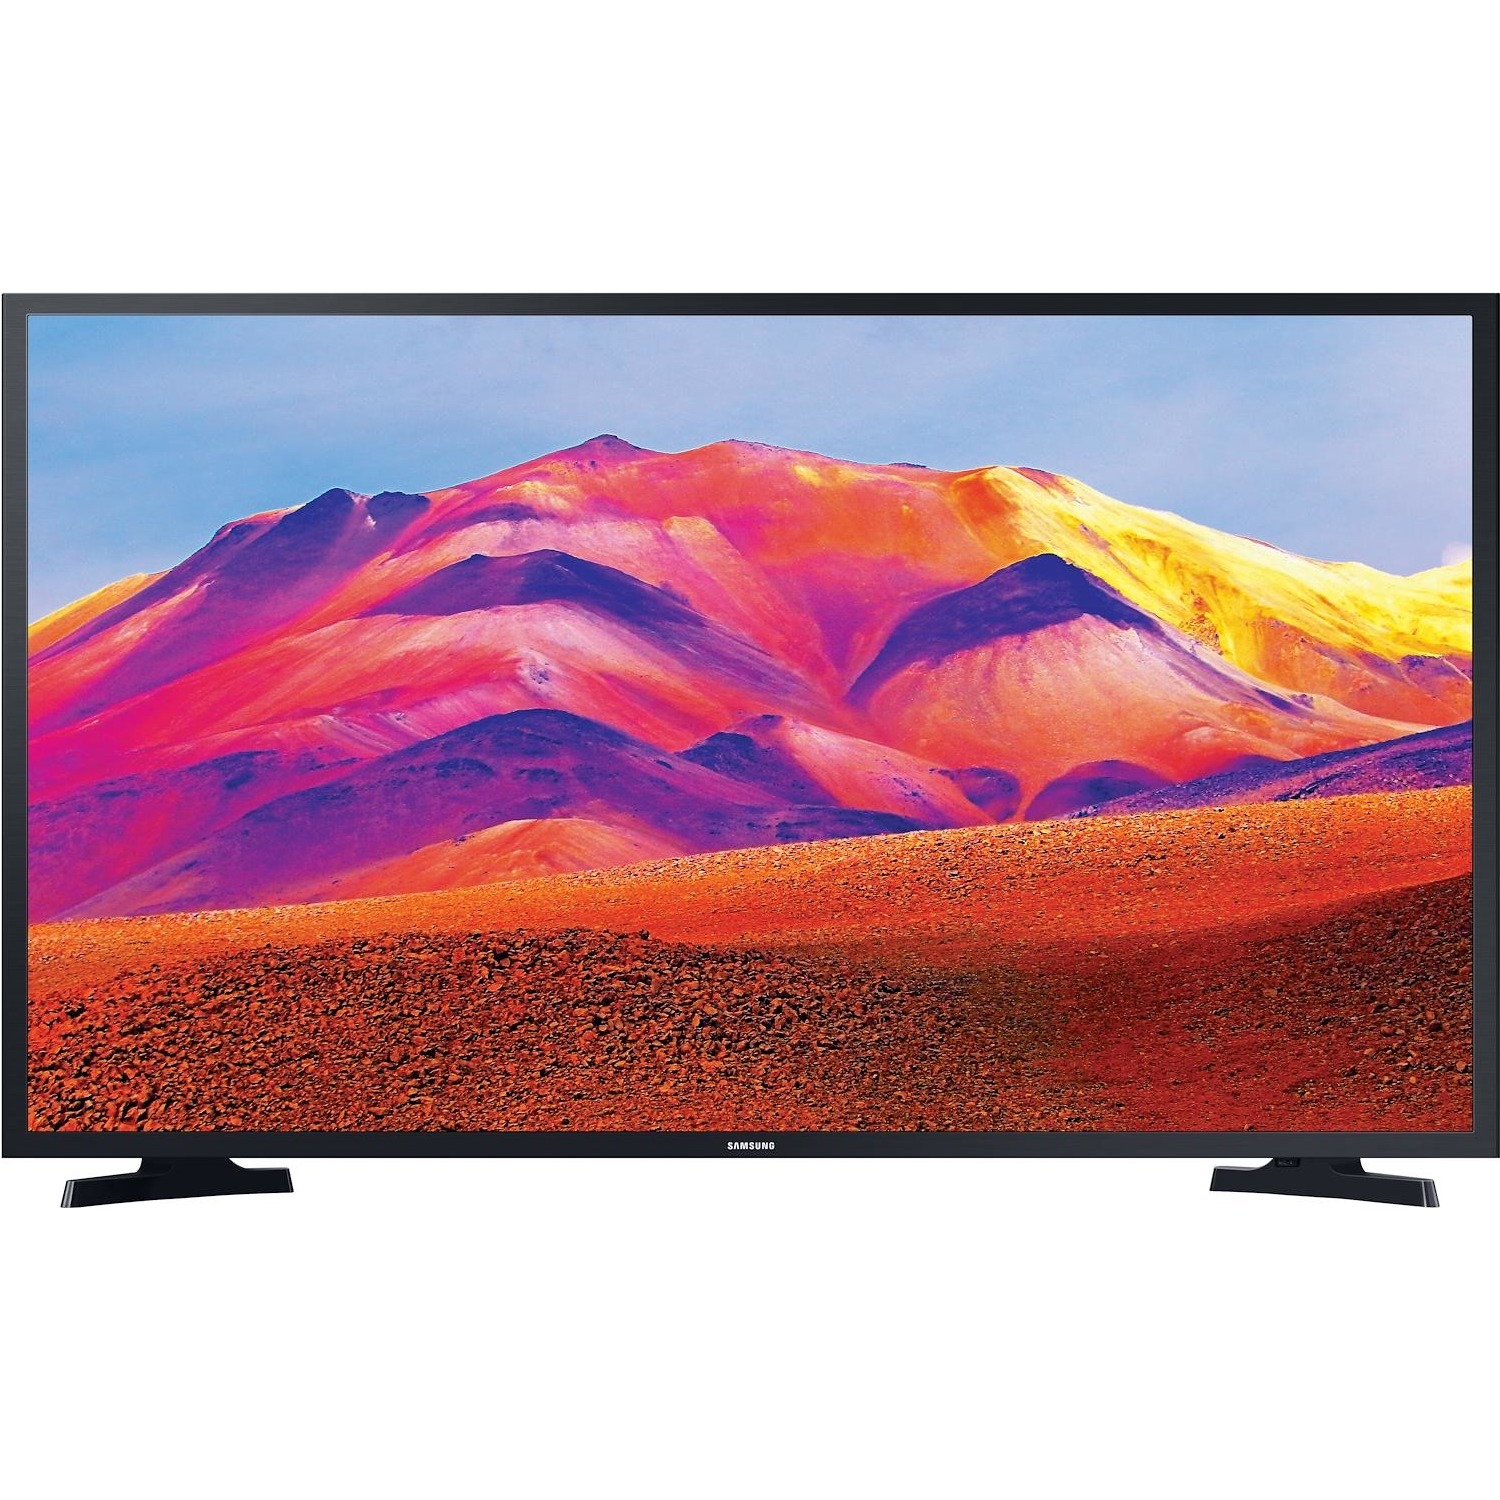 Immagine per TV LED Samsung 32T5372 Calibrato FULL HD da DIMOStore